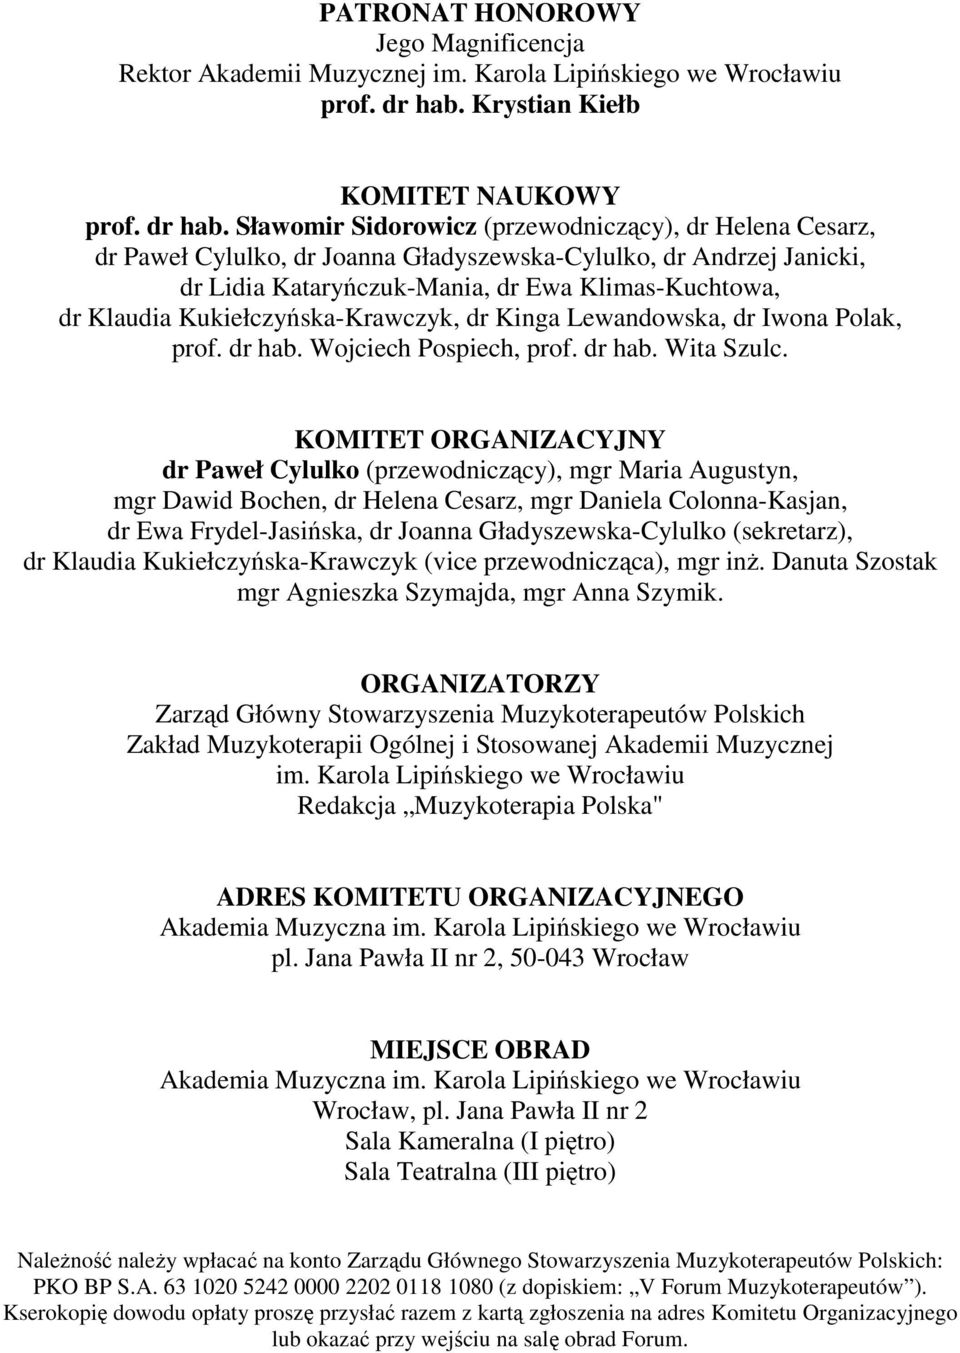 Sławomir Sidorowicz (przewodniczący), dr Helena Cesarz, dr Paweł Cylulko, dr Joanna Gładyszewska-Cylulko, dr Andrzej Janicki, dr Lidia Kataryńczuk-Mania, dr Ewa Klimas-Kuchtowa, dr Klaudia